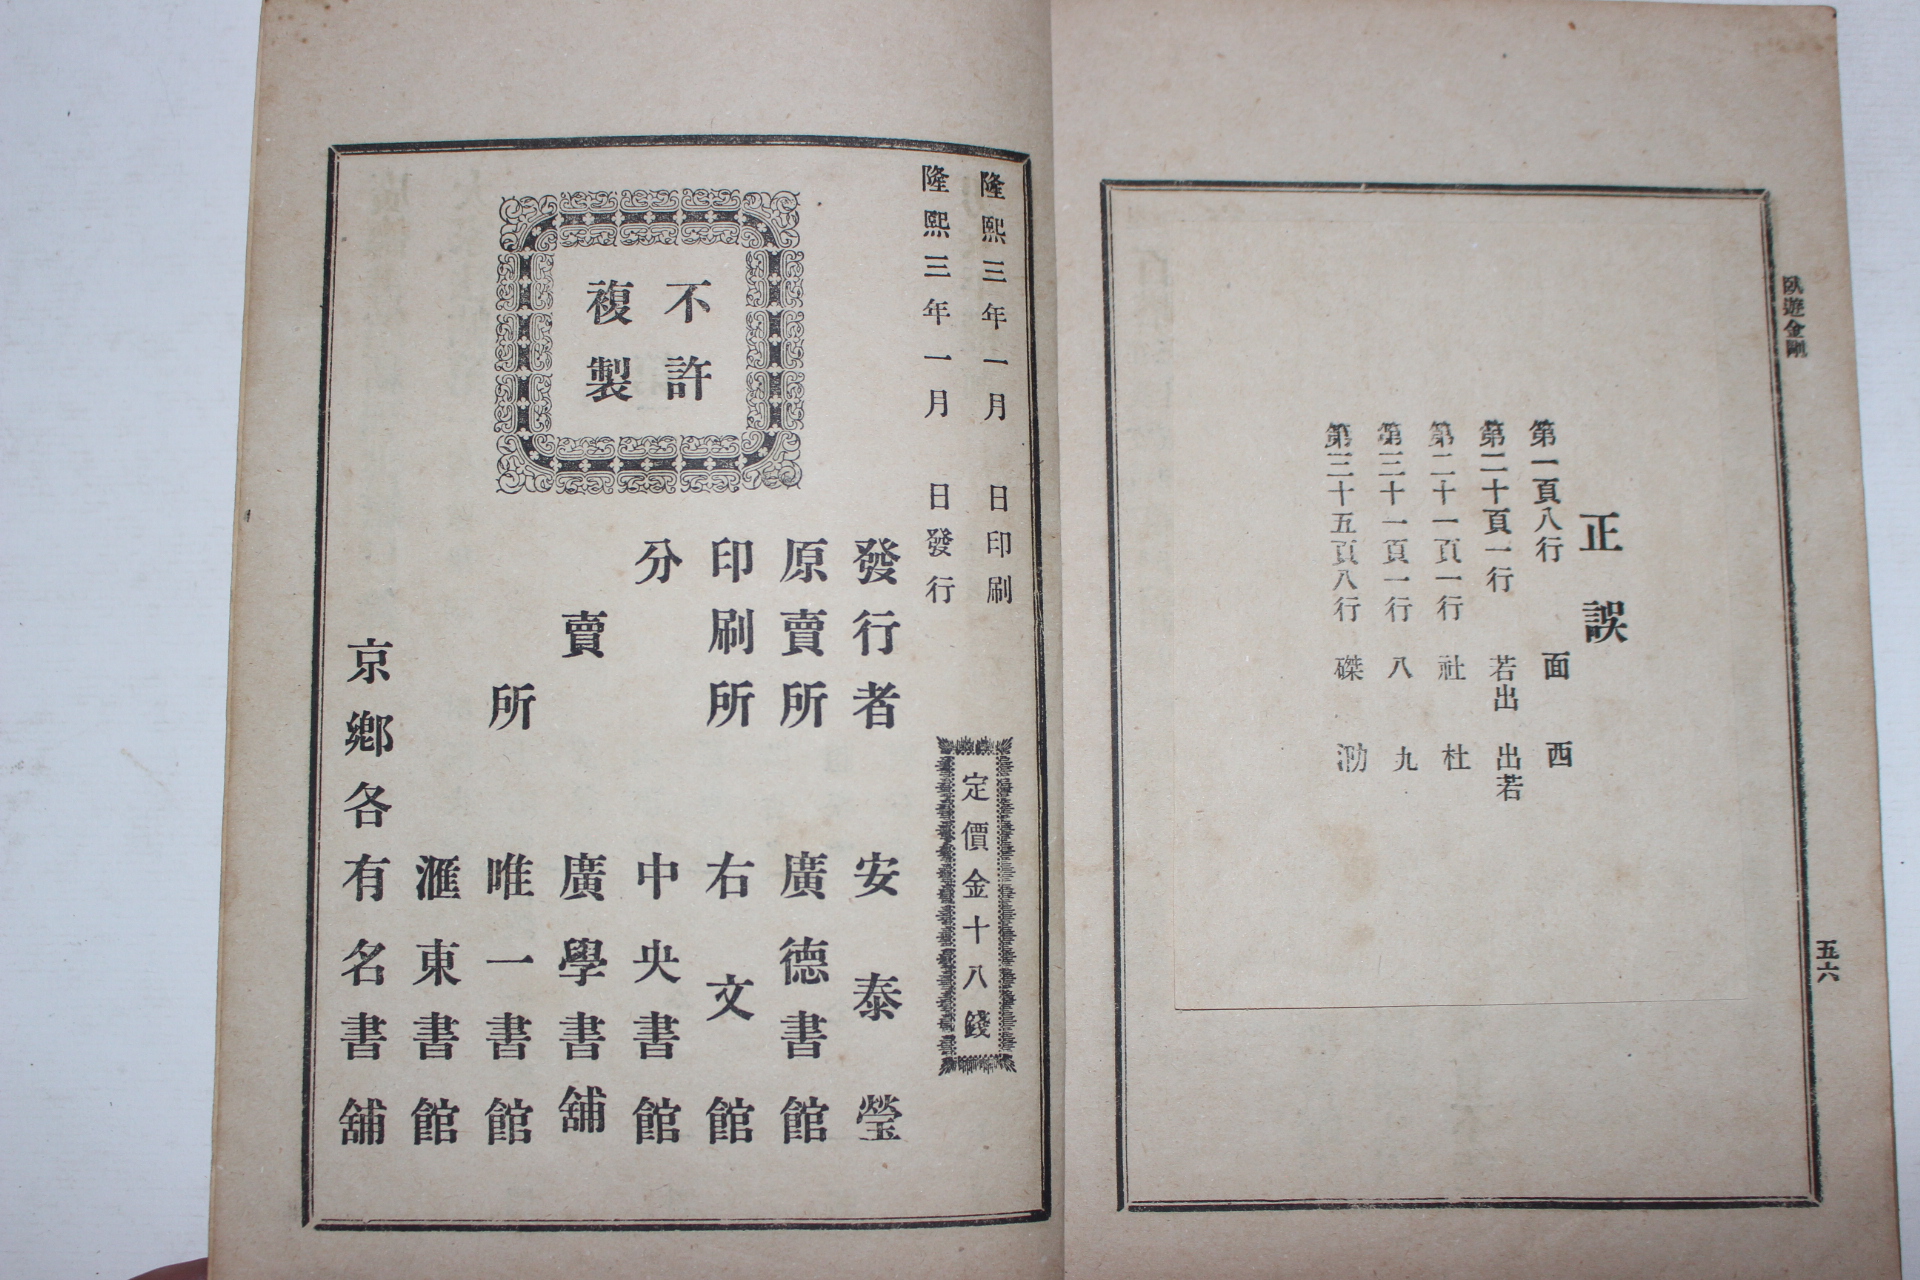 1909년(융희3년) 금강산기행문 와유금강(臥遊金剛) 1책완질